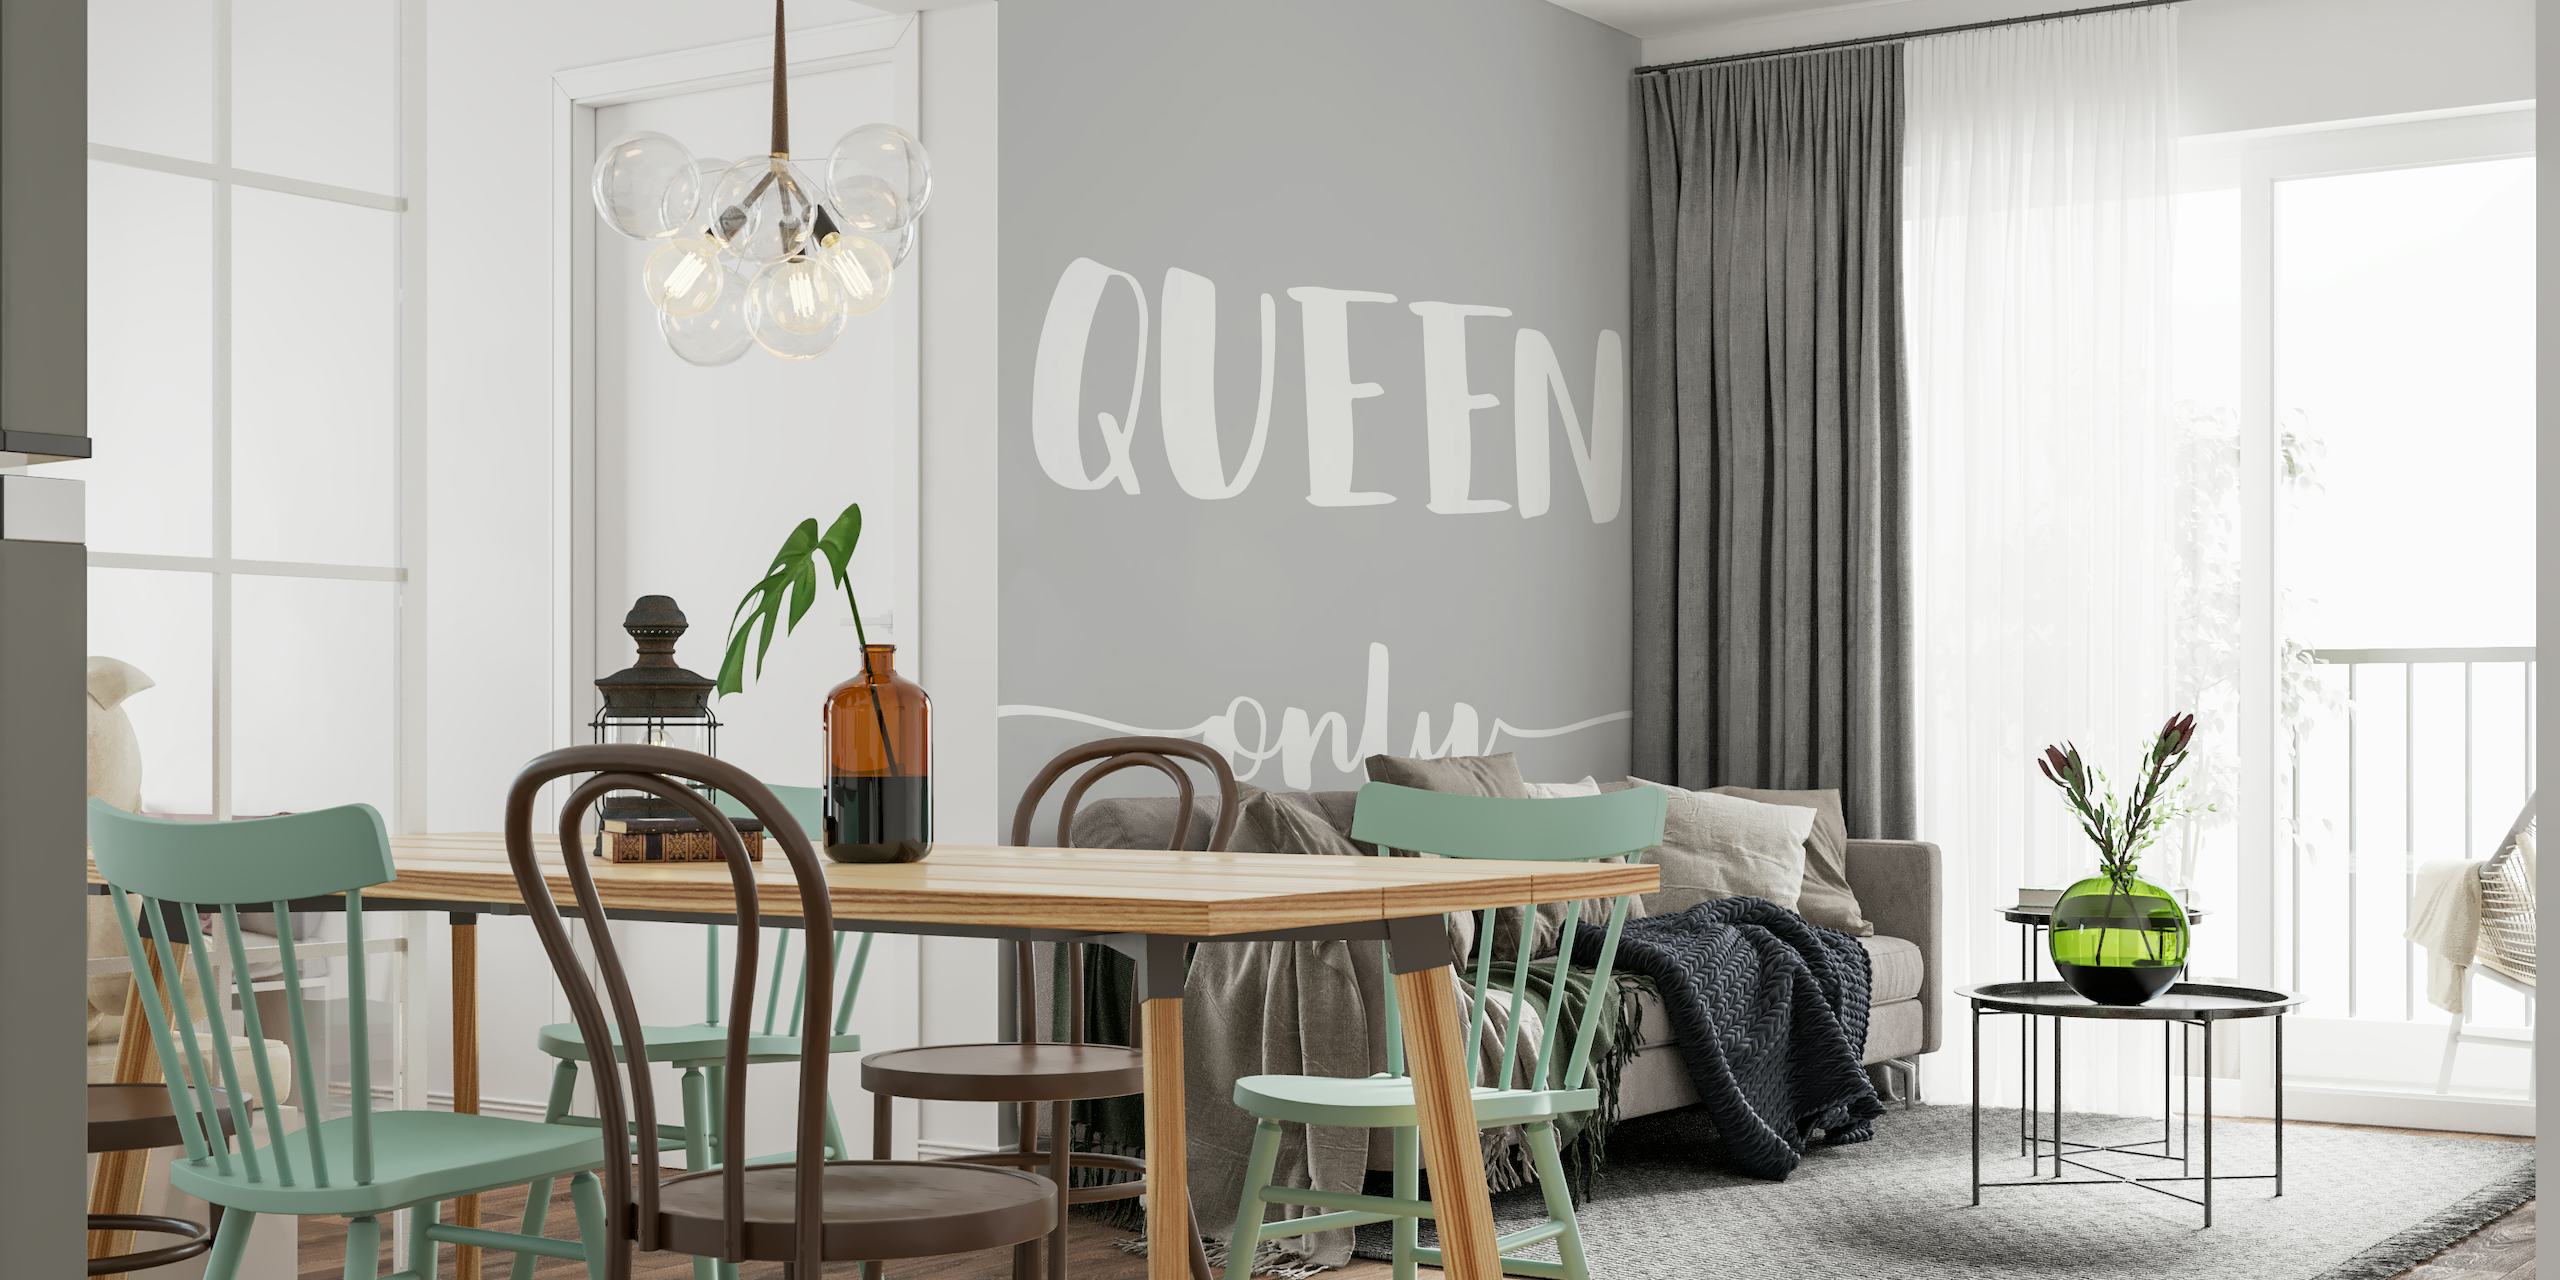 Minimalistisk 'Queen Only' tekstvægmaleri i grå og hvid